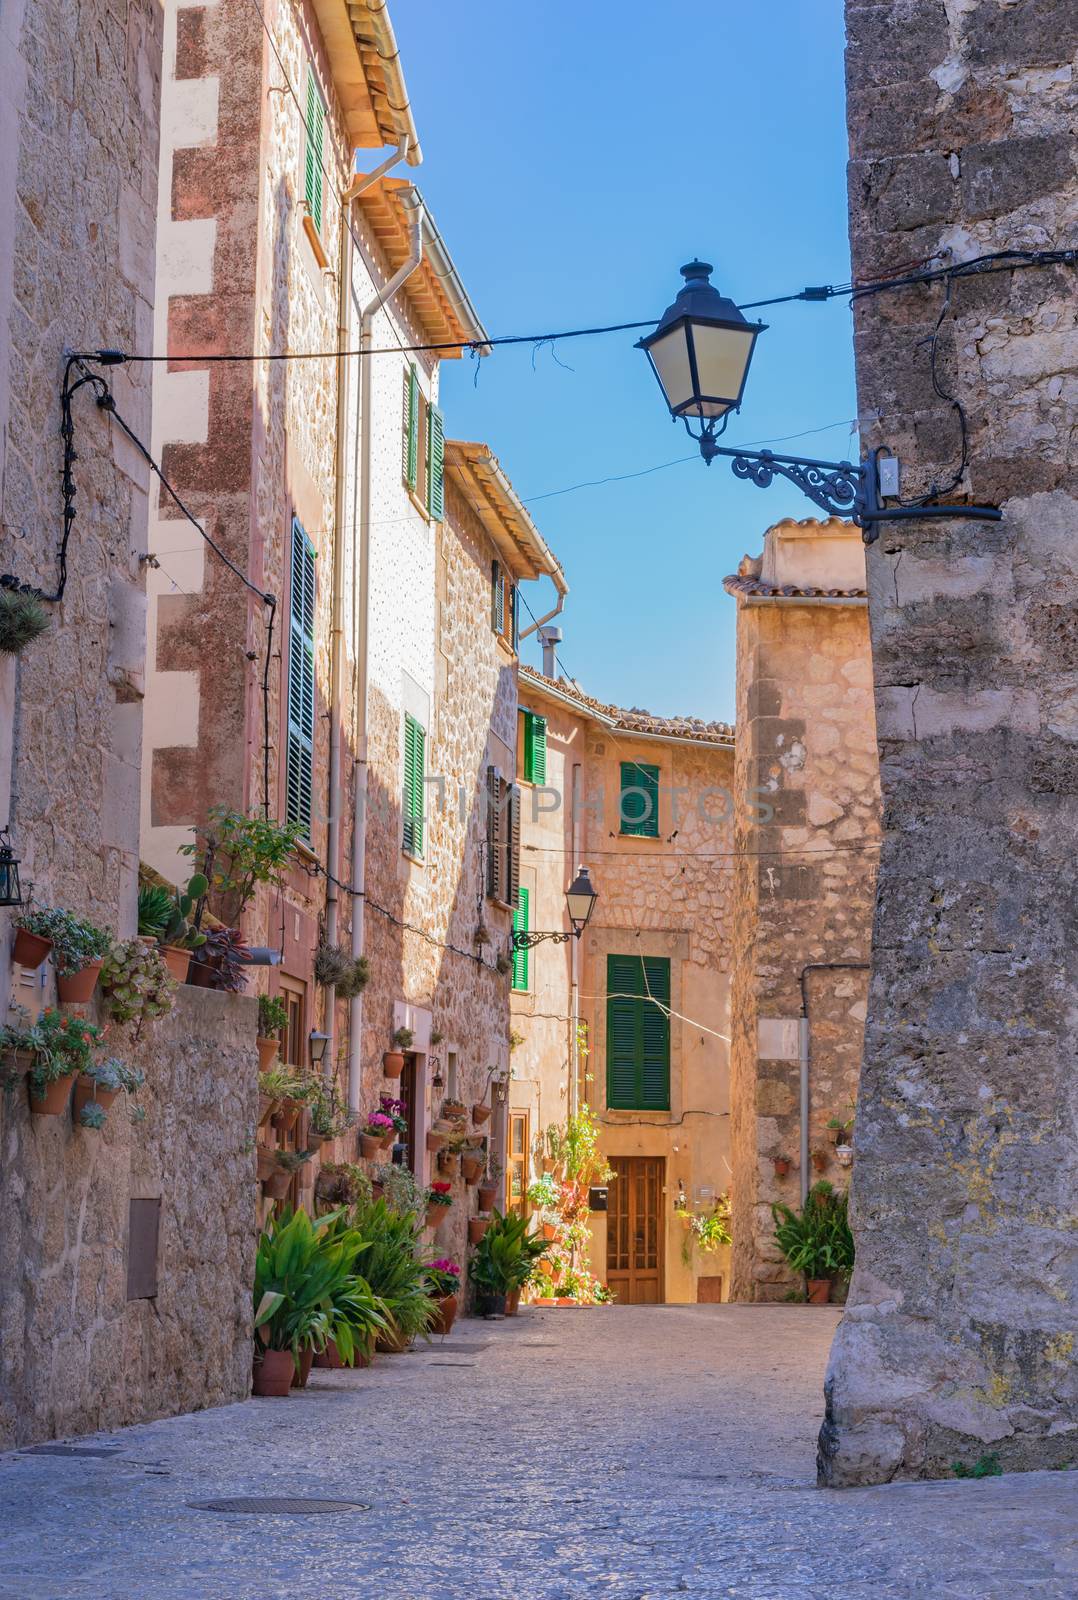 Idyllic old village of Valldemossa on Majorca island, Spain by Vulcano